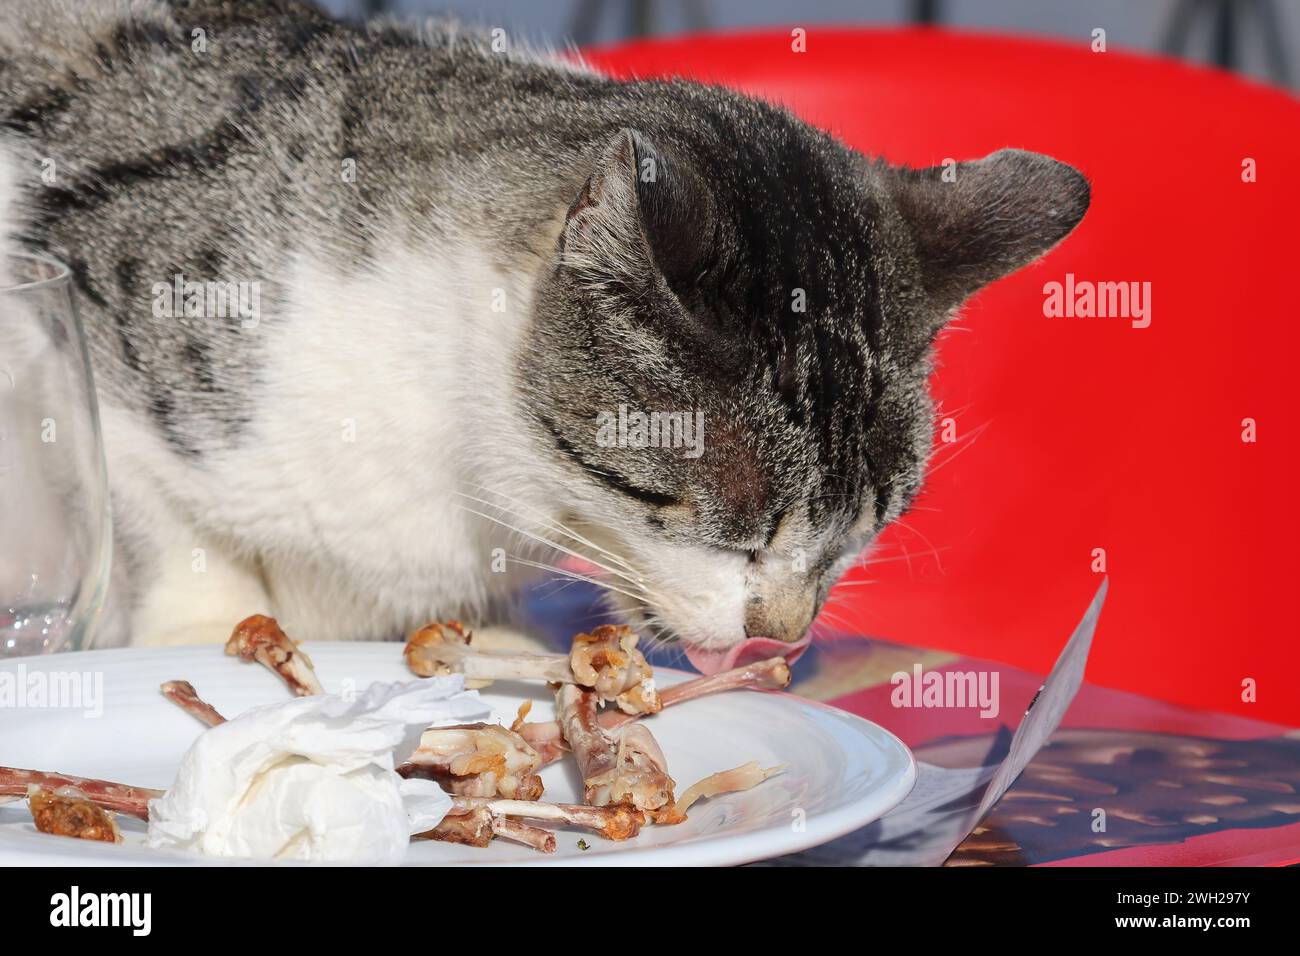 Un chat errant mangeant dans la terrasse d'un restaurant les restes de nourriture des touristes Banque D'Images